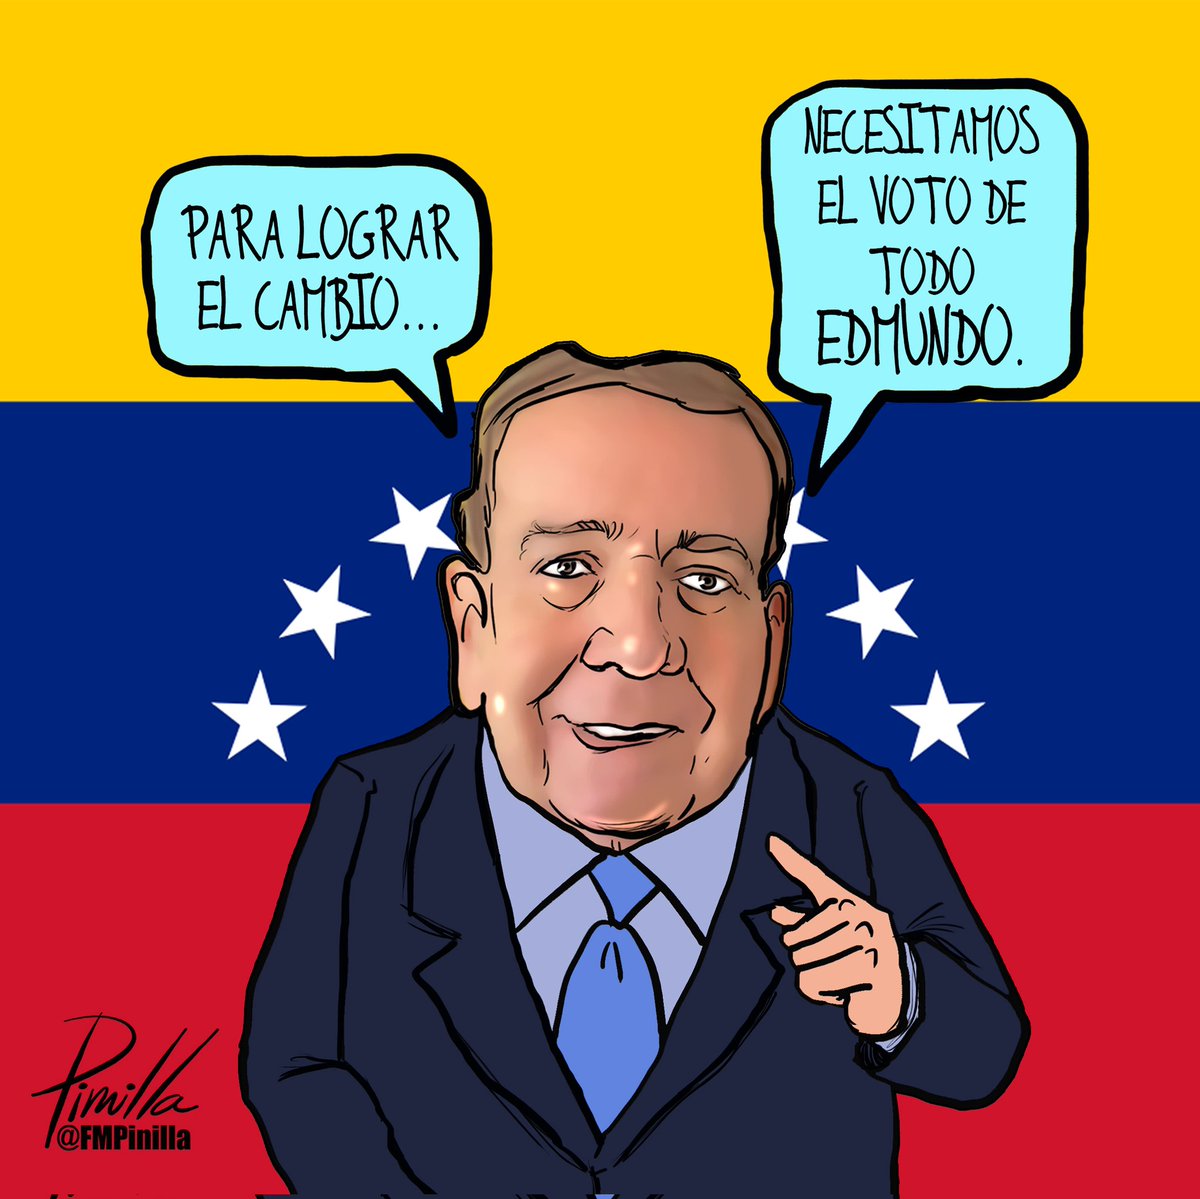 ¡Necesitamos el voto de todo Edmundo!
•
#Caricatura para @elnacionalweb y @eltequeno
•
#Caricatura #Cartoon #edmundogonzálezurrutia #edmundoparatodoelmundo #Venezuela #venezolanos #politicalcartoon